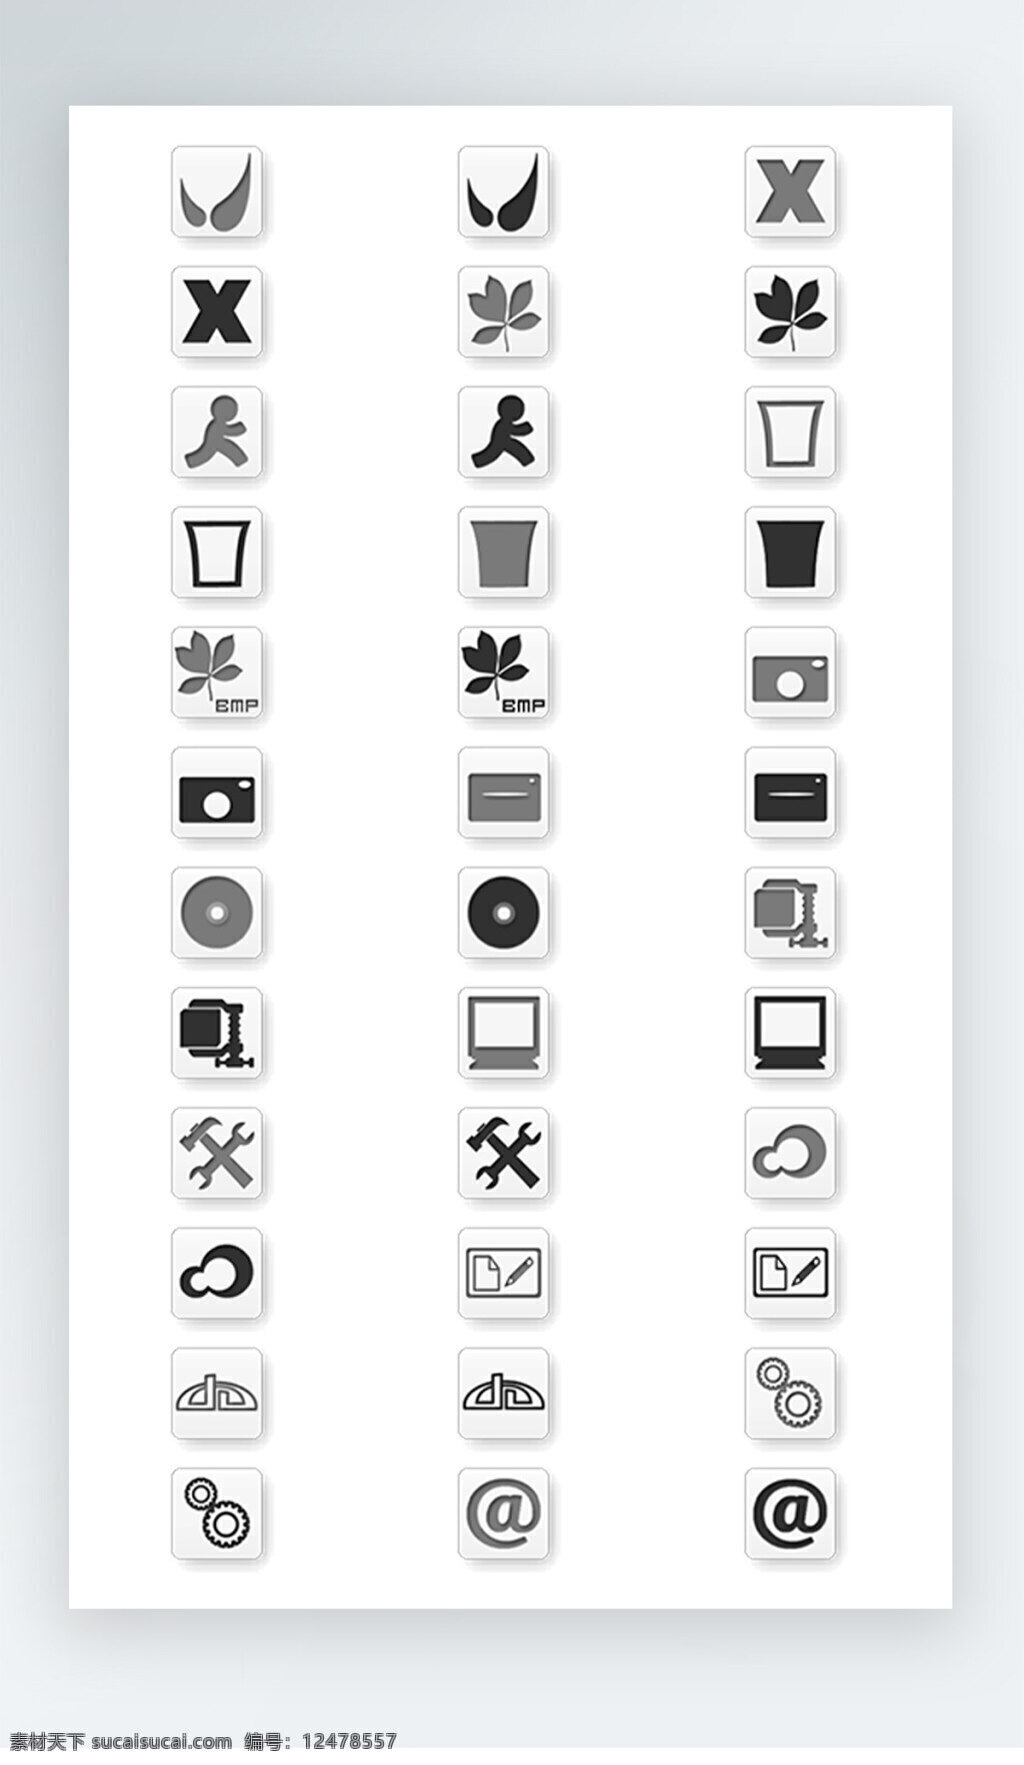 生活用品 图标 黑白 iconpng 生活用品图标 黑白图标 icon